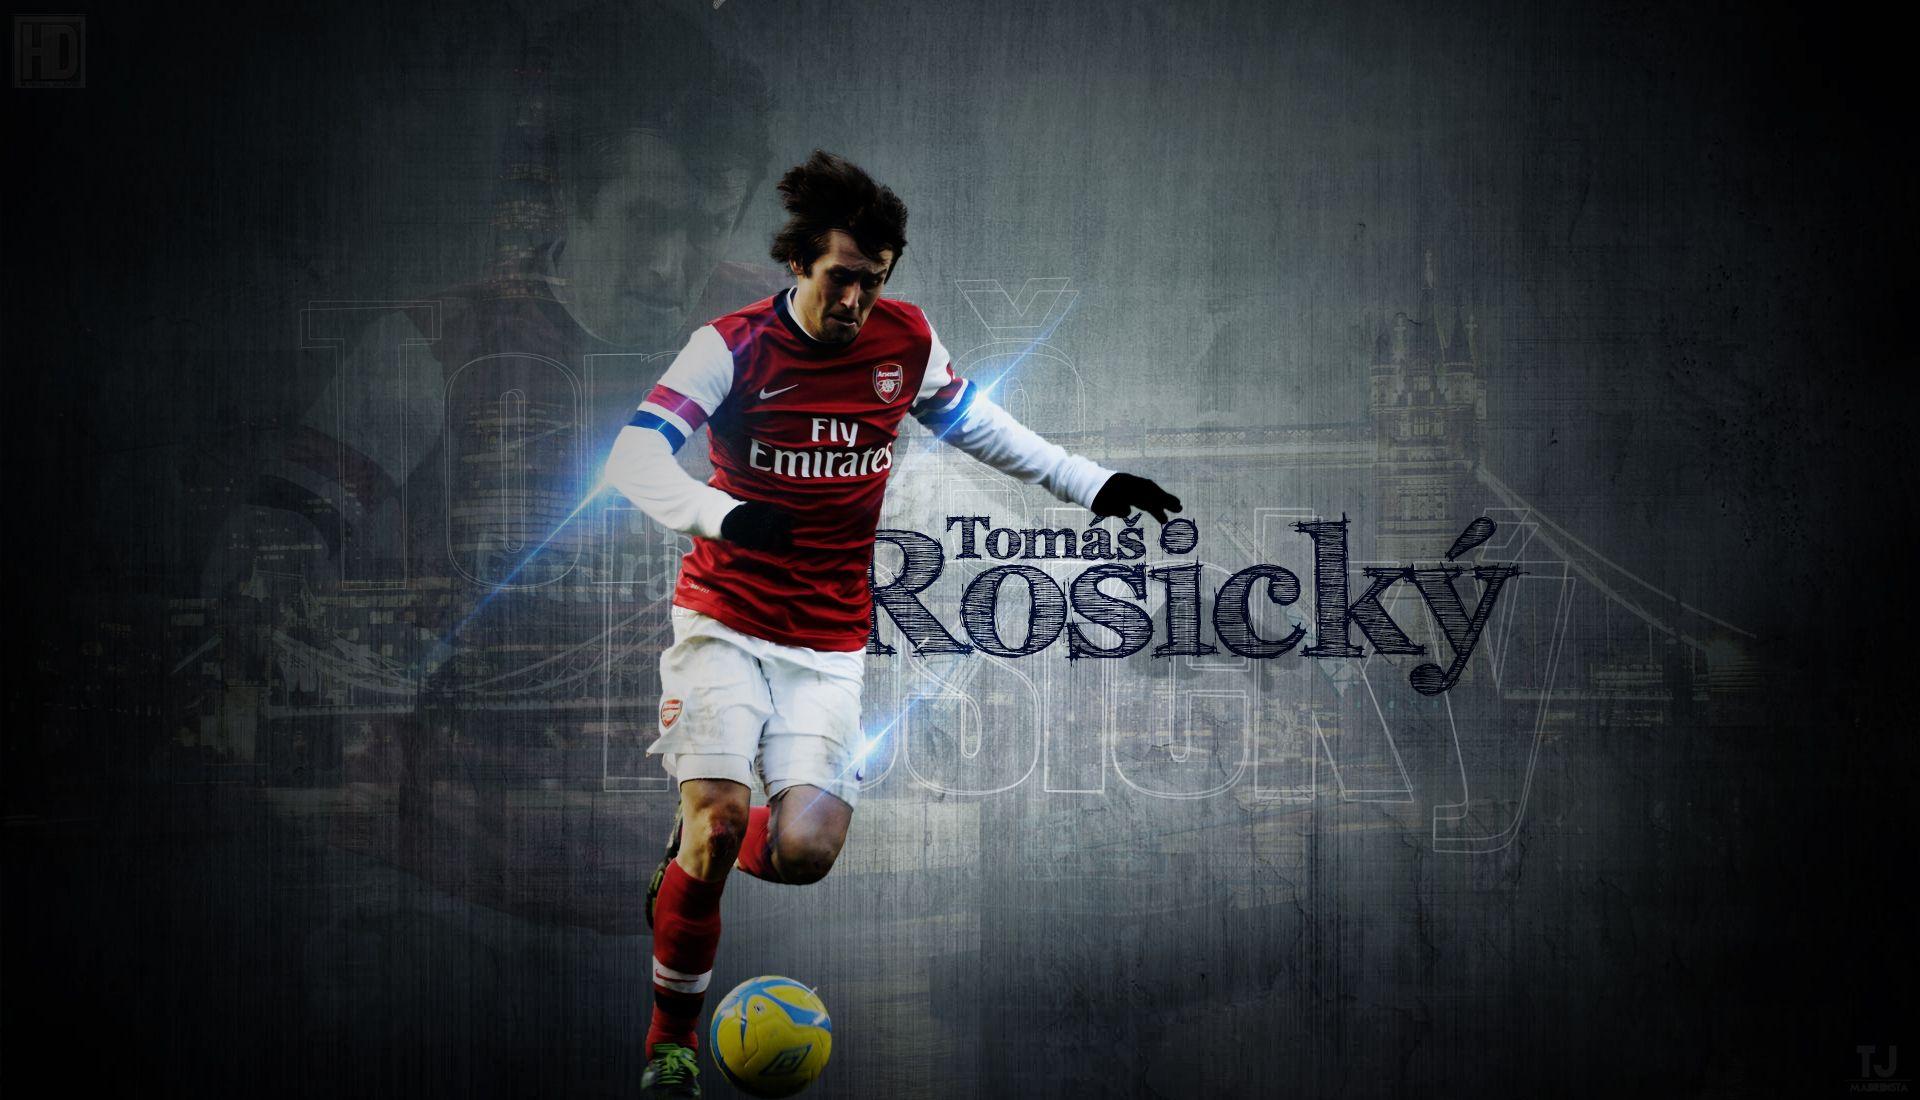 Tomas Rosicky. HD Football Wallpaper